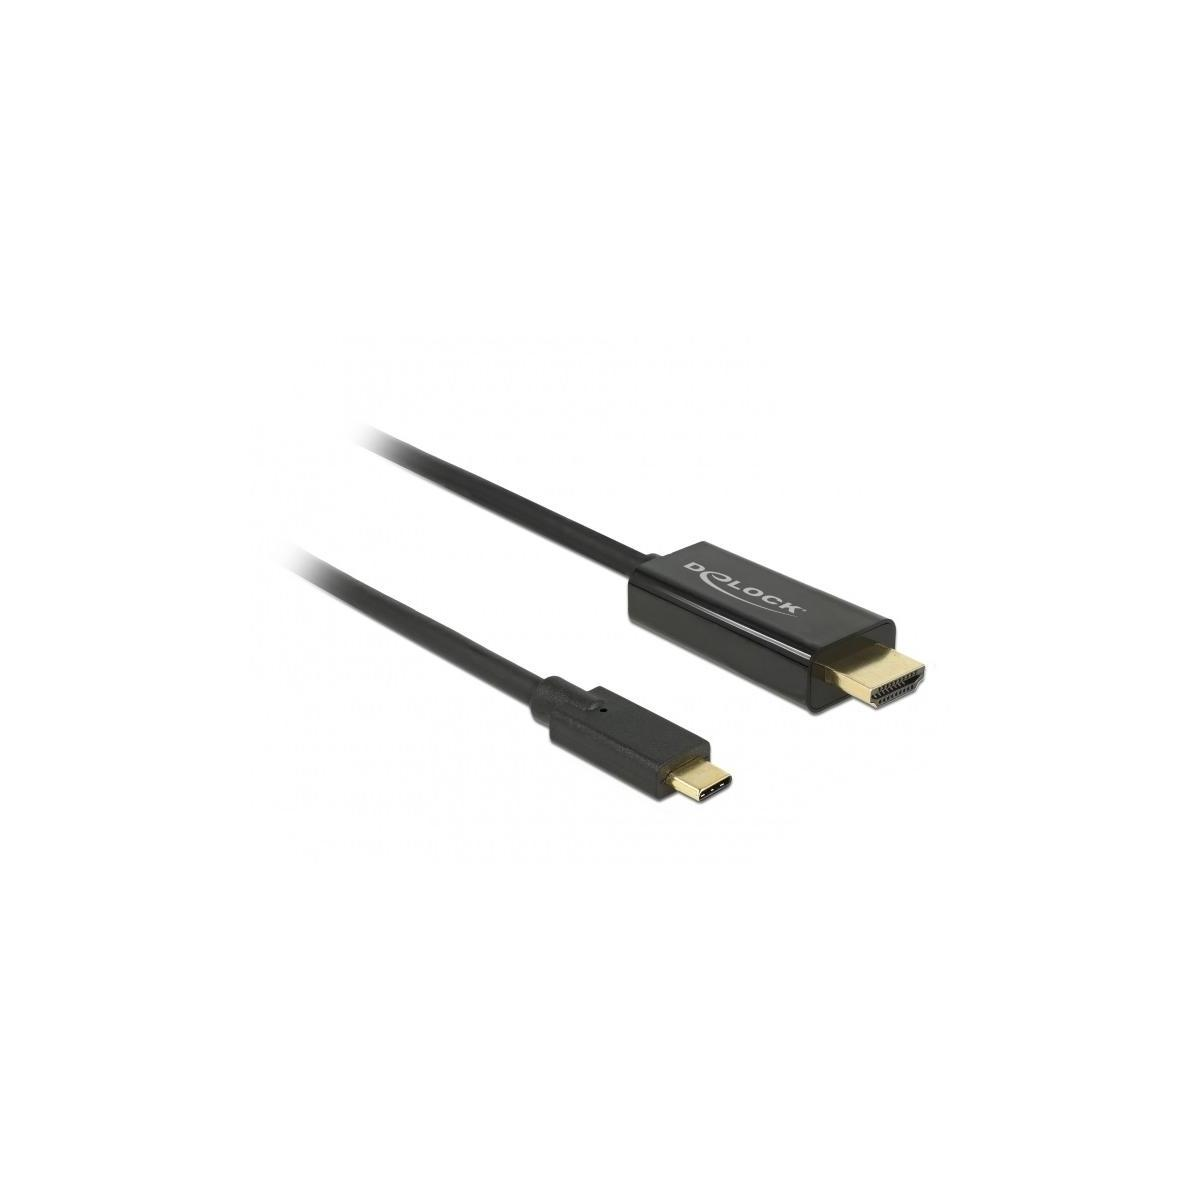 Optionen Audio, & & DELOCK <gt/> USB Display Schwarz Type-C TV m Video, 1 HDMI & Kabel Zubehör, DELOCK 30Hz &